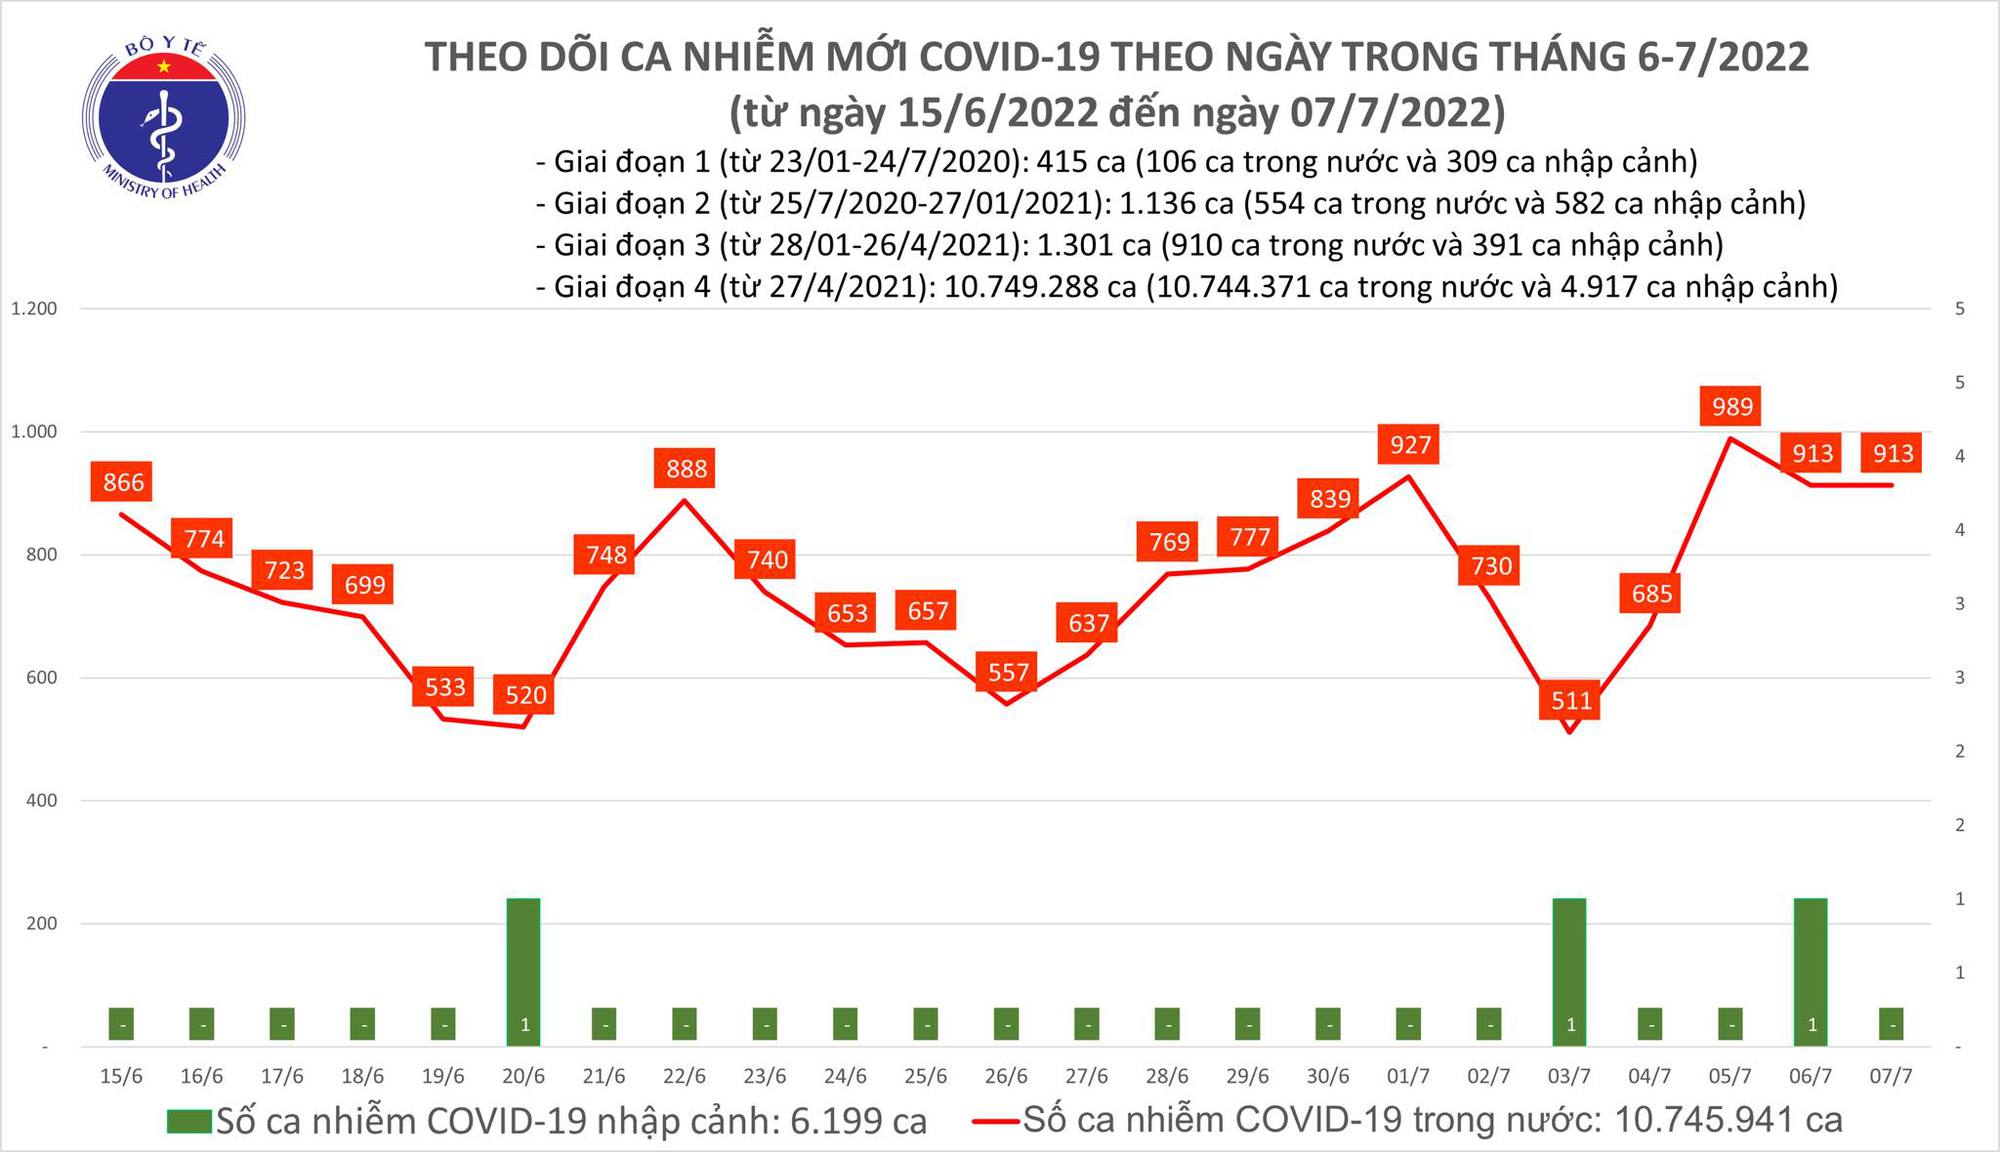 Ngày 7/7: Có 913 ca COVID-19 mới, F0 nặng tăng lên 35 trường hợp - Ảnh 1.